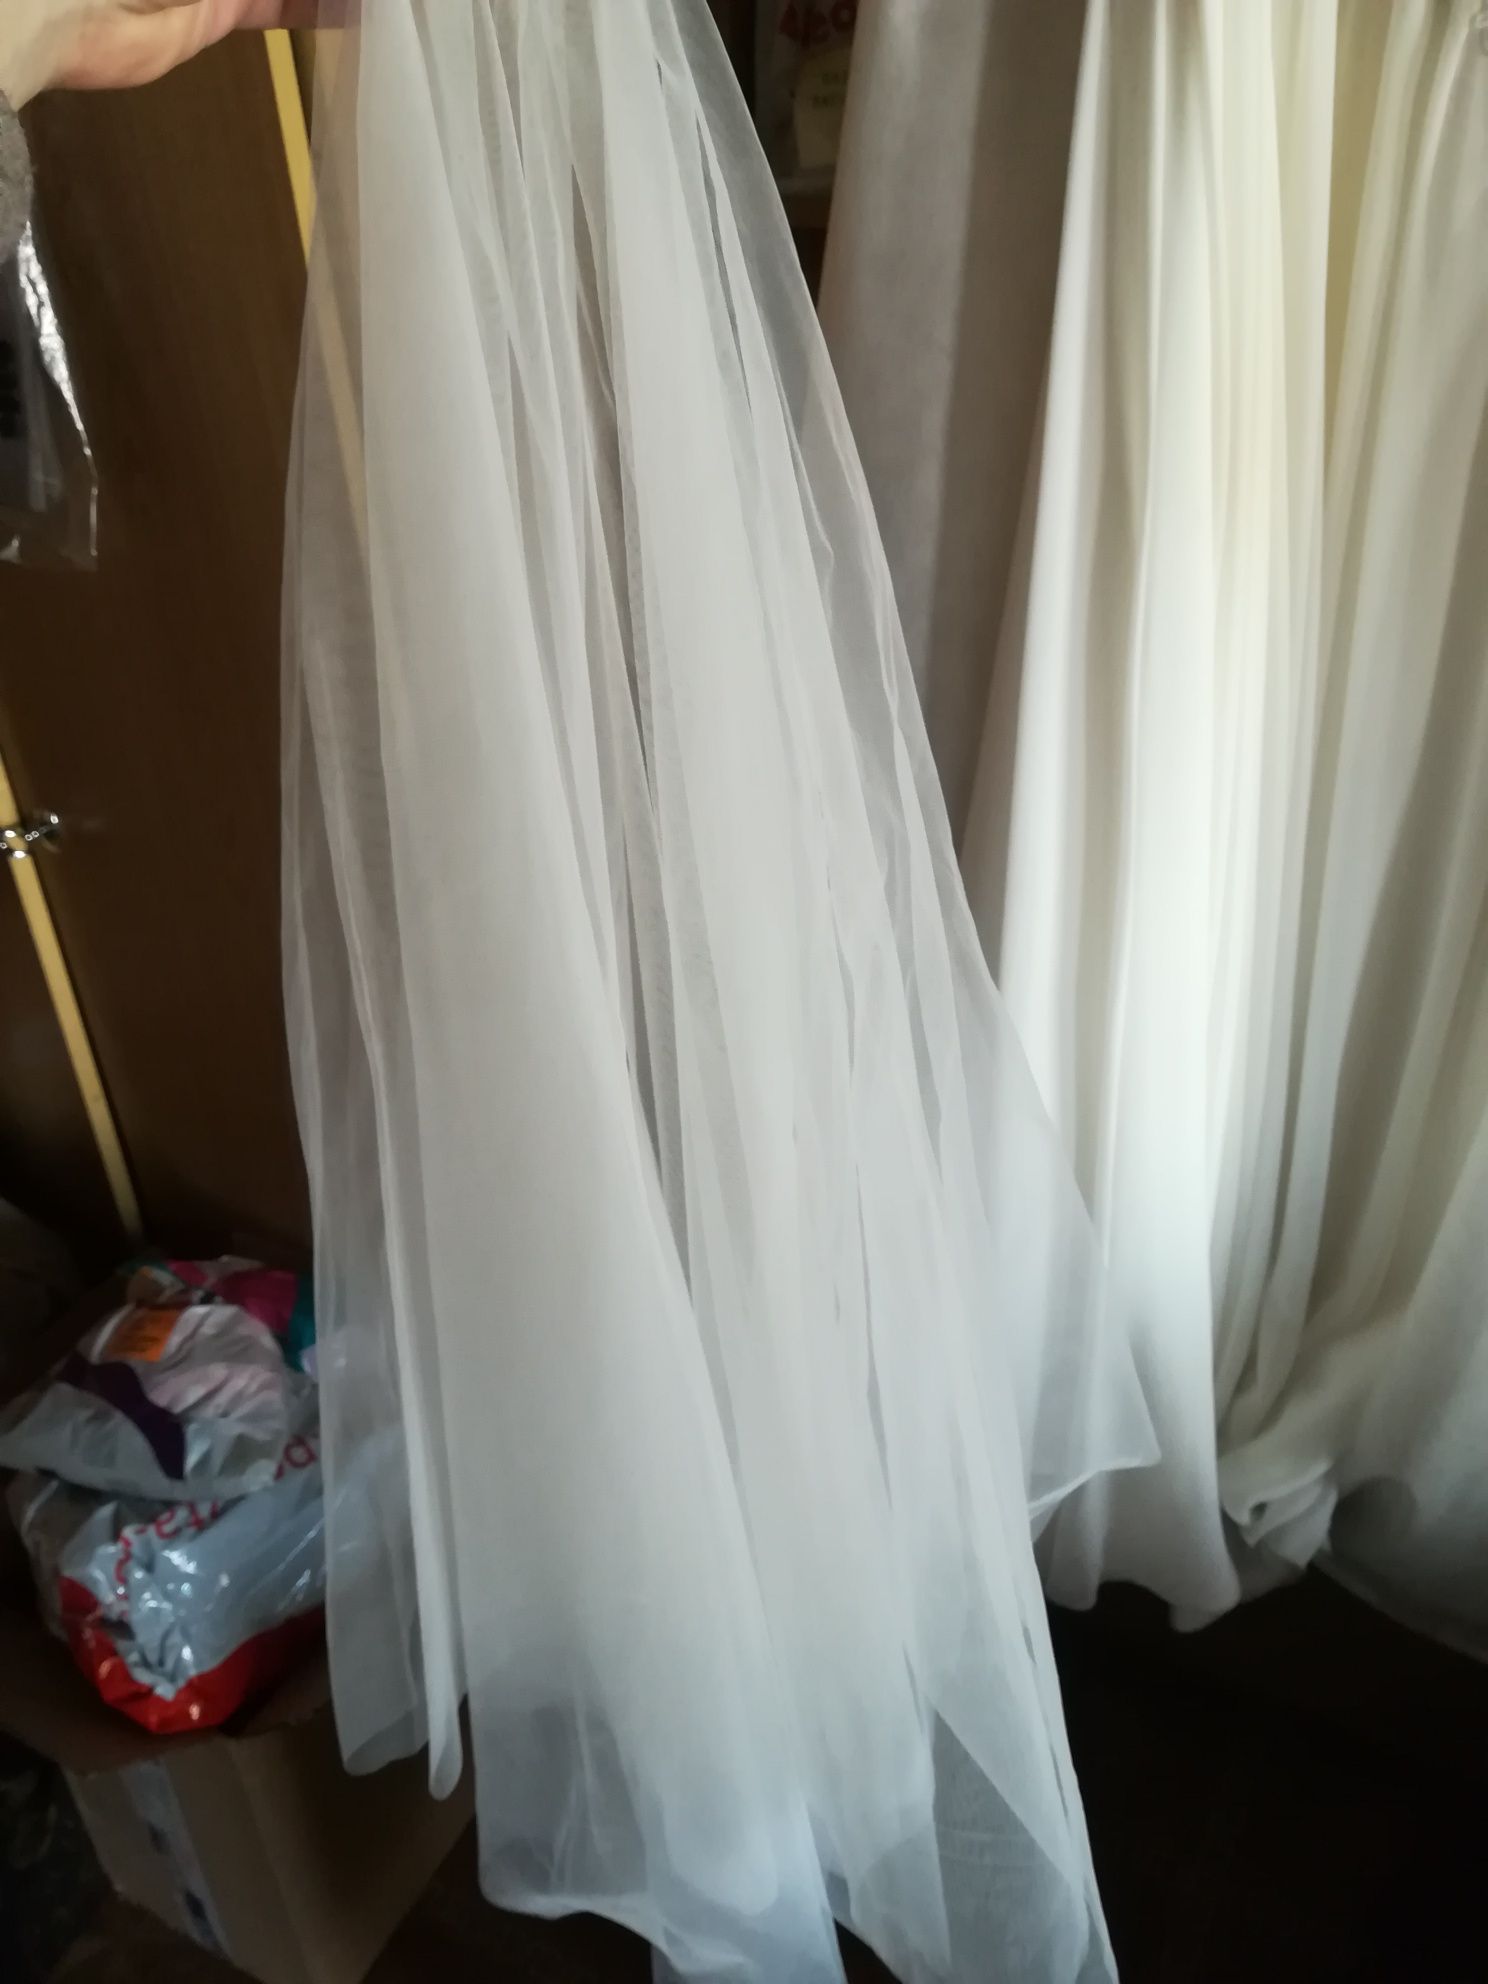 Suknia ślubna model Liza 051 rozm. 42/44 wzrost 160 cm + niski obcas